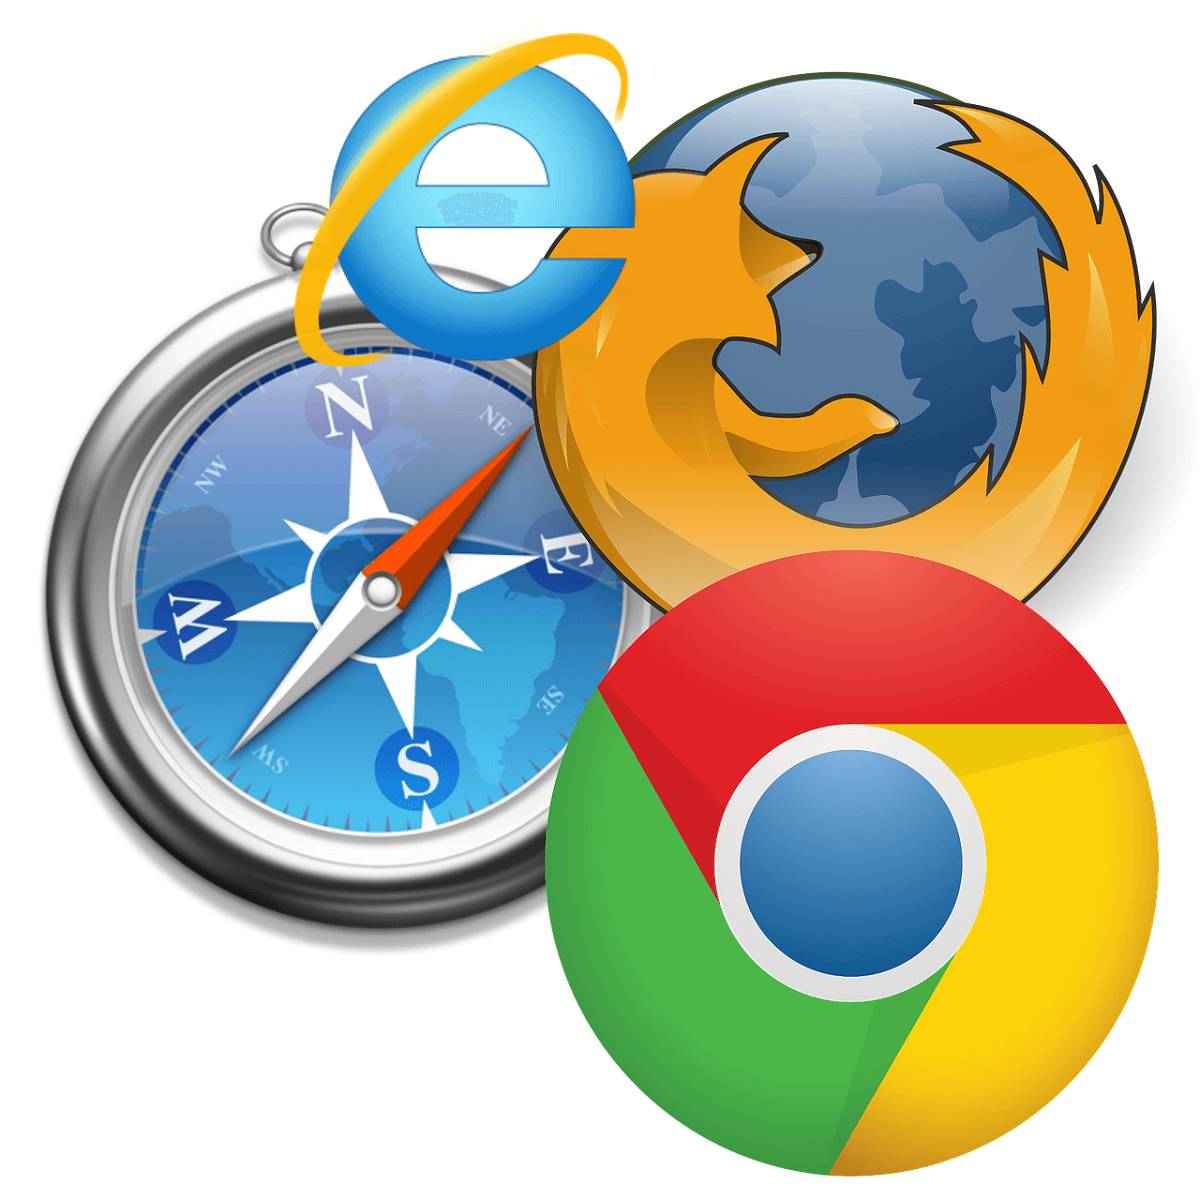 El navegador web requiere la versión 10.1 o superior de Flash. ¿Qué debes hacer?